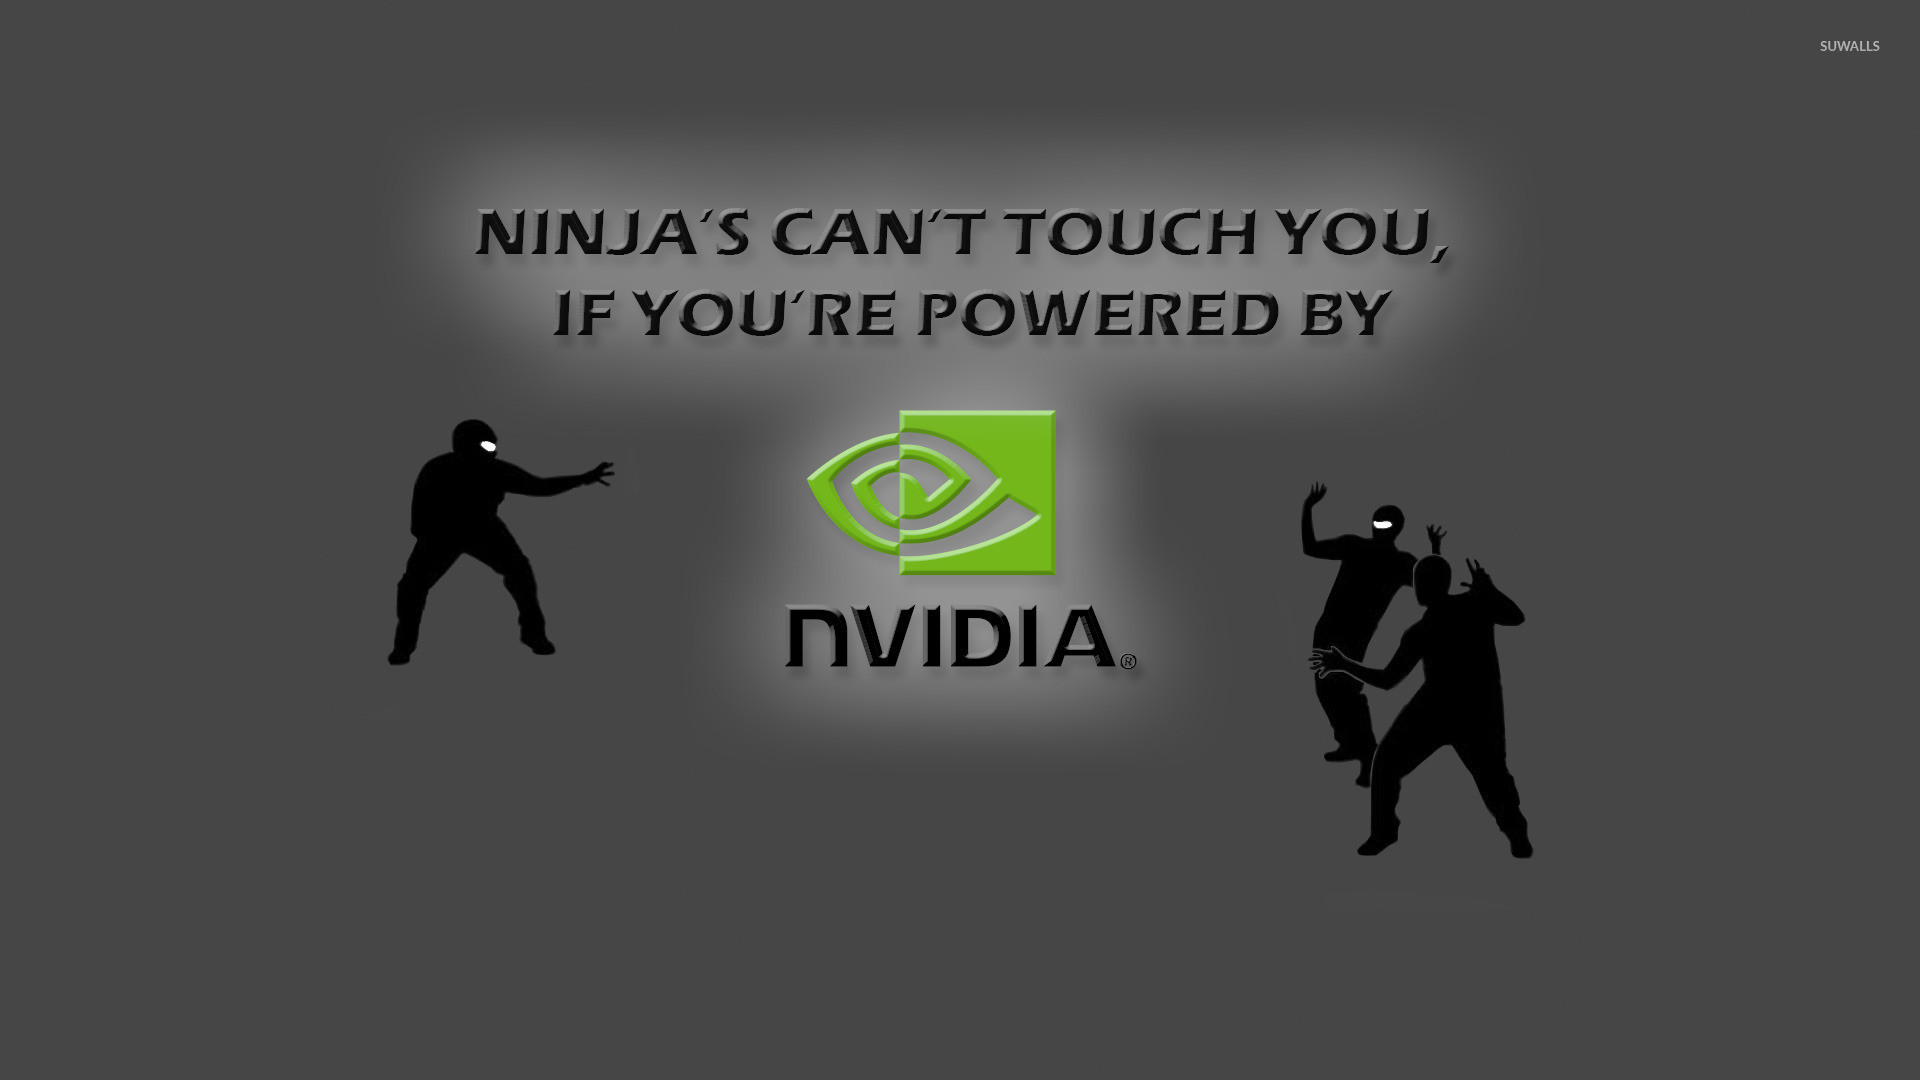 1920x1080 Ninjas vs Nvidia wallpaper  jpg